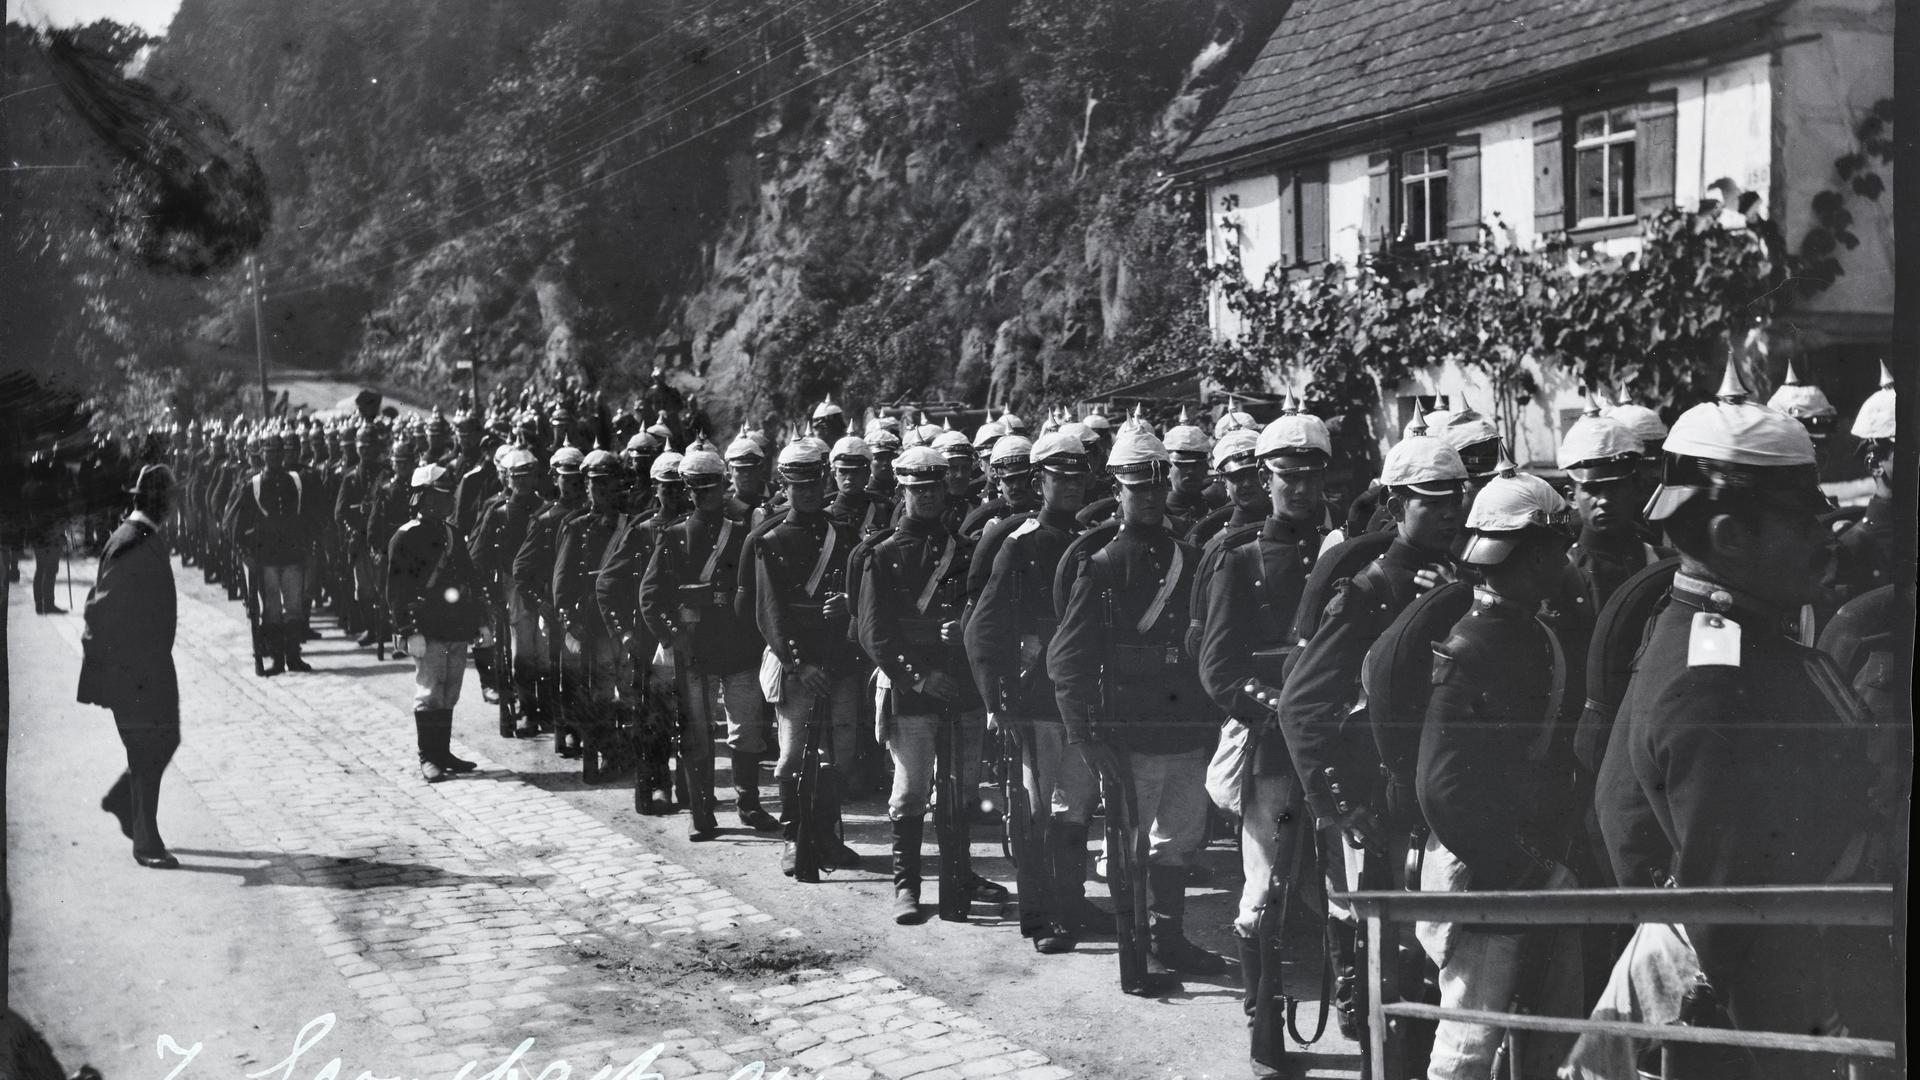 historische Aufnahme aus Gernsbach, eine große Anzahl Soldaten mit Pickelhauben marschiert eine Straße entlang